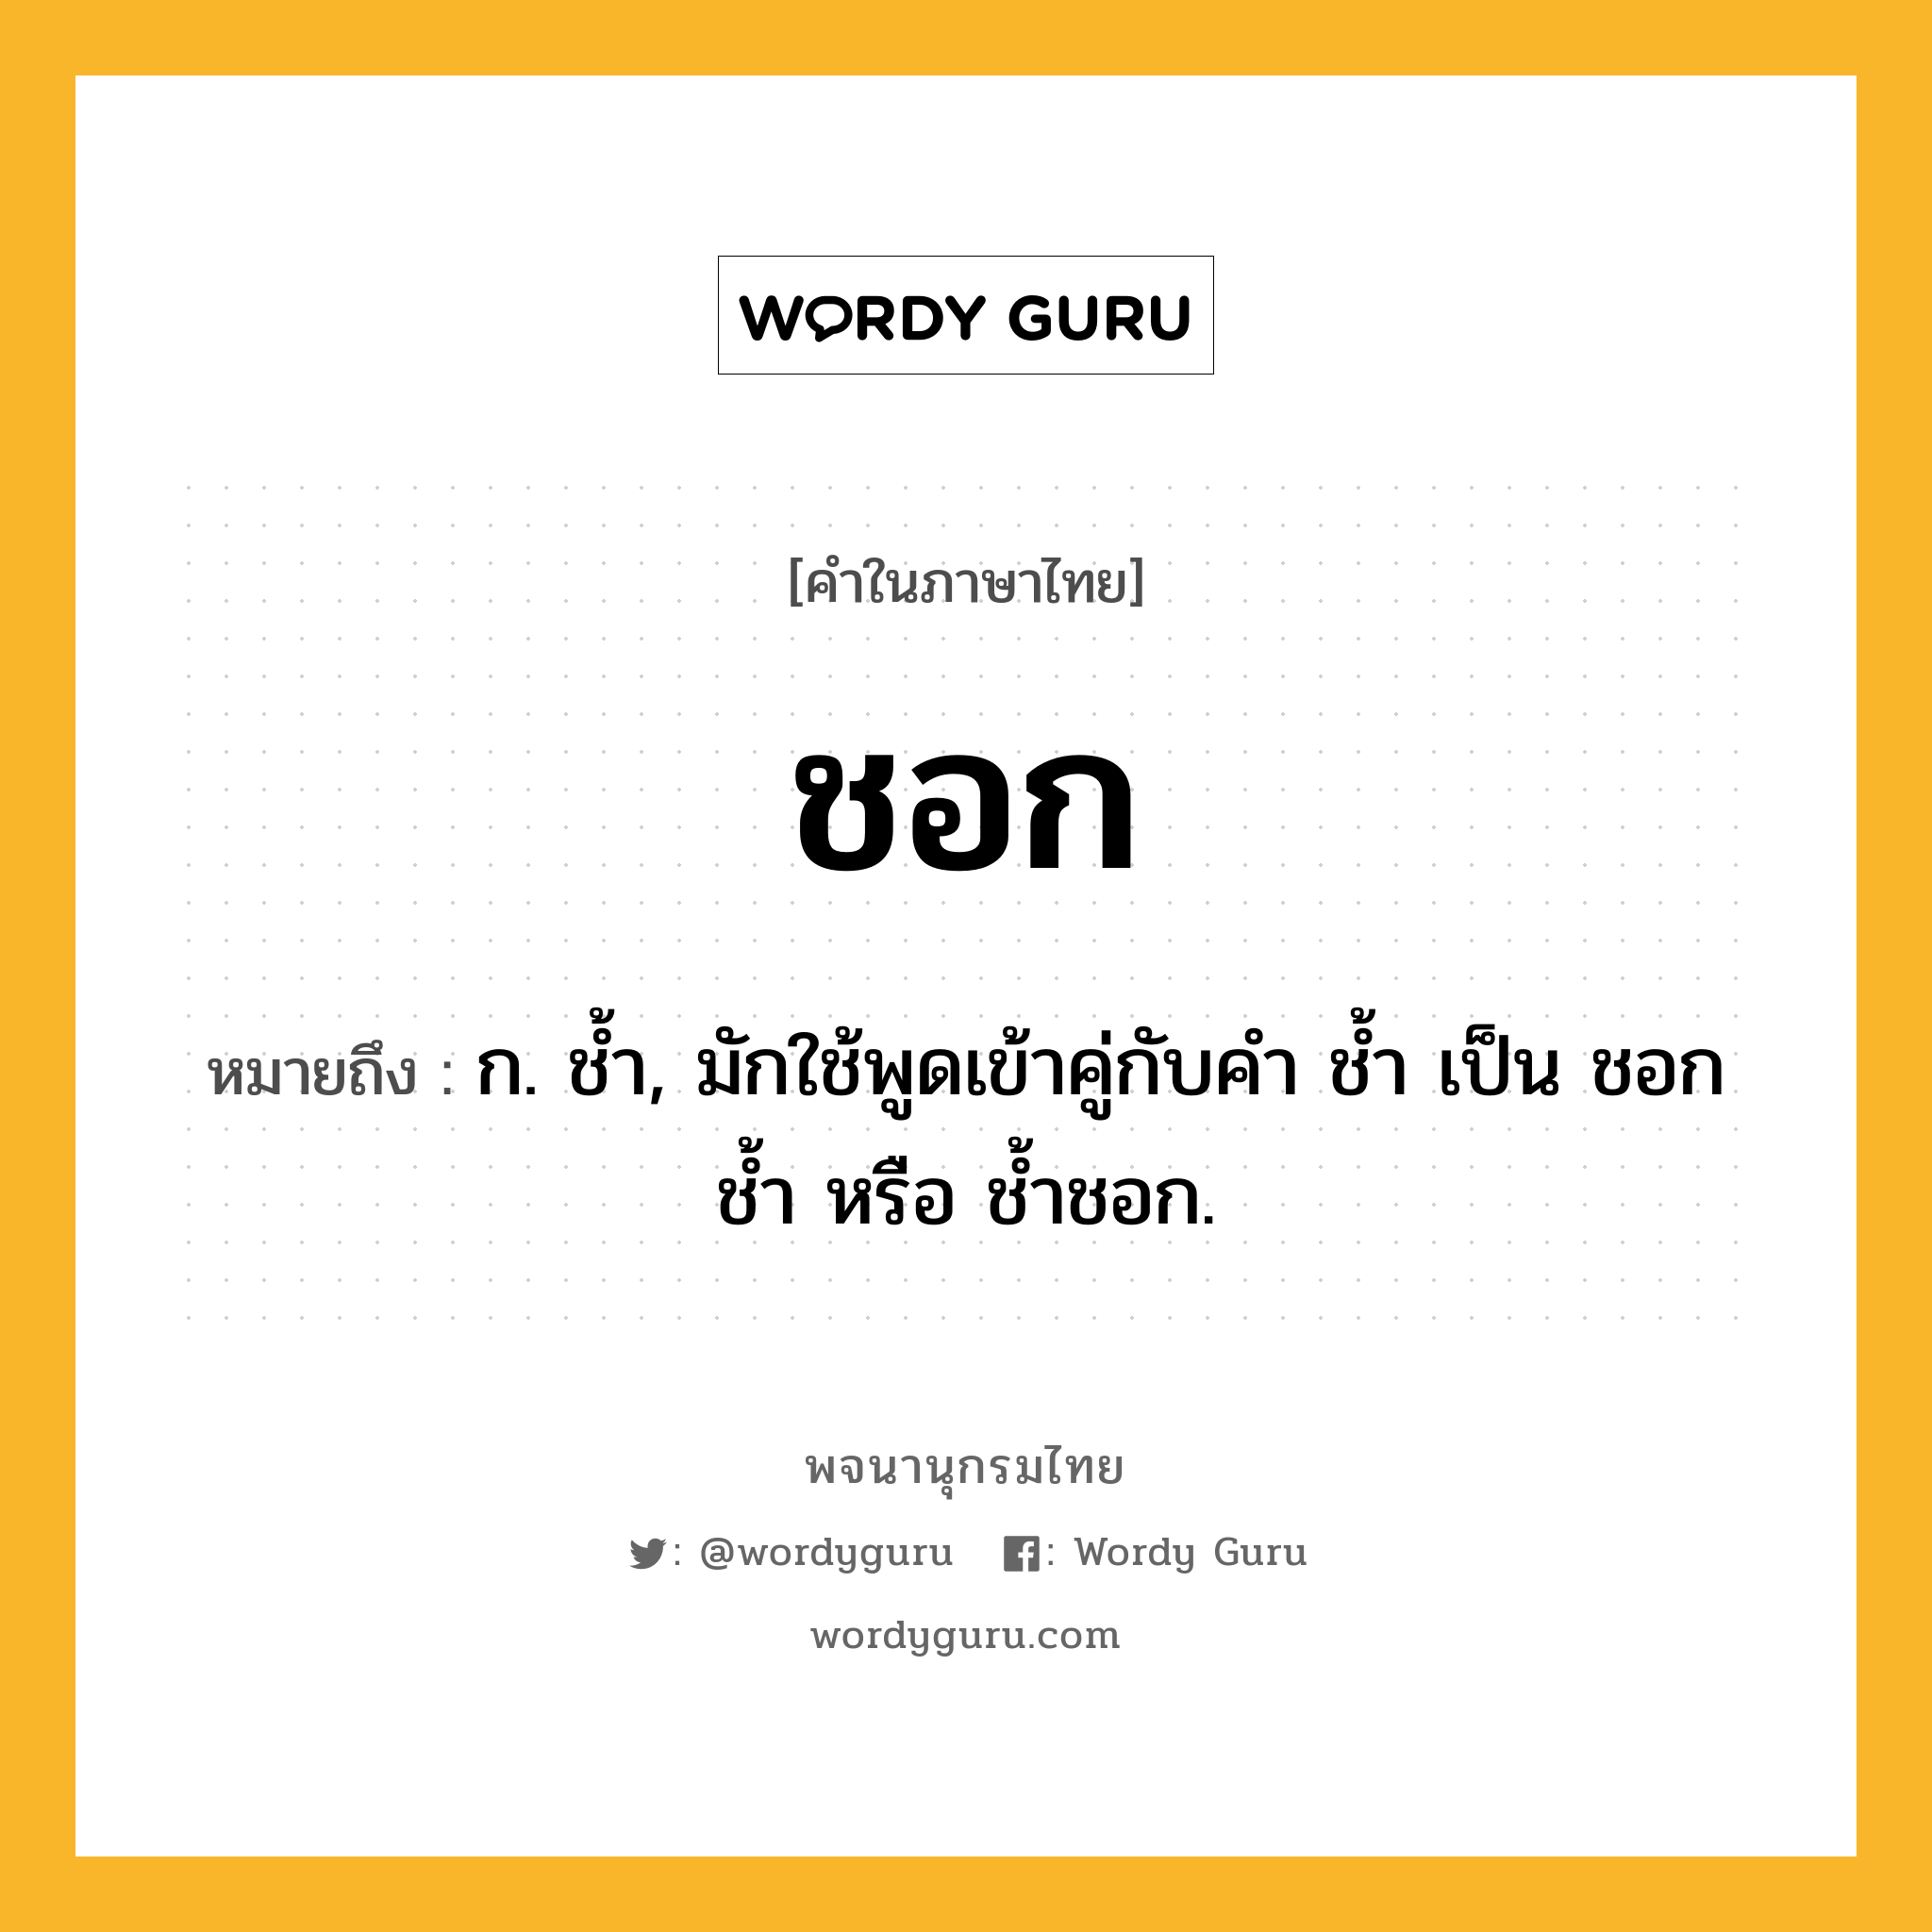 ชอก หมายถึงอะไร?, คำในภาษาไทย ชอก หมายถึง ก. ชํ้า, มักใช้พูดเข้าคู่กับคํา ชํ้า เป็น ชอกชํ้า หรือ ชํ้าชอก.